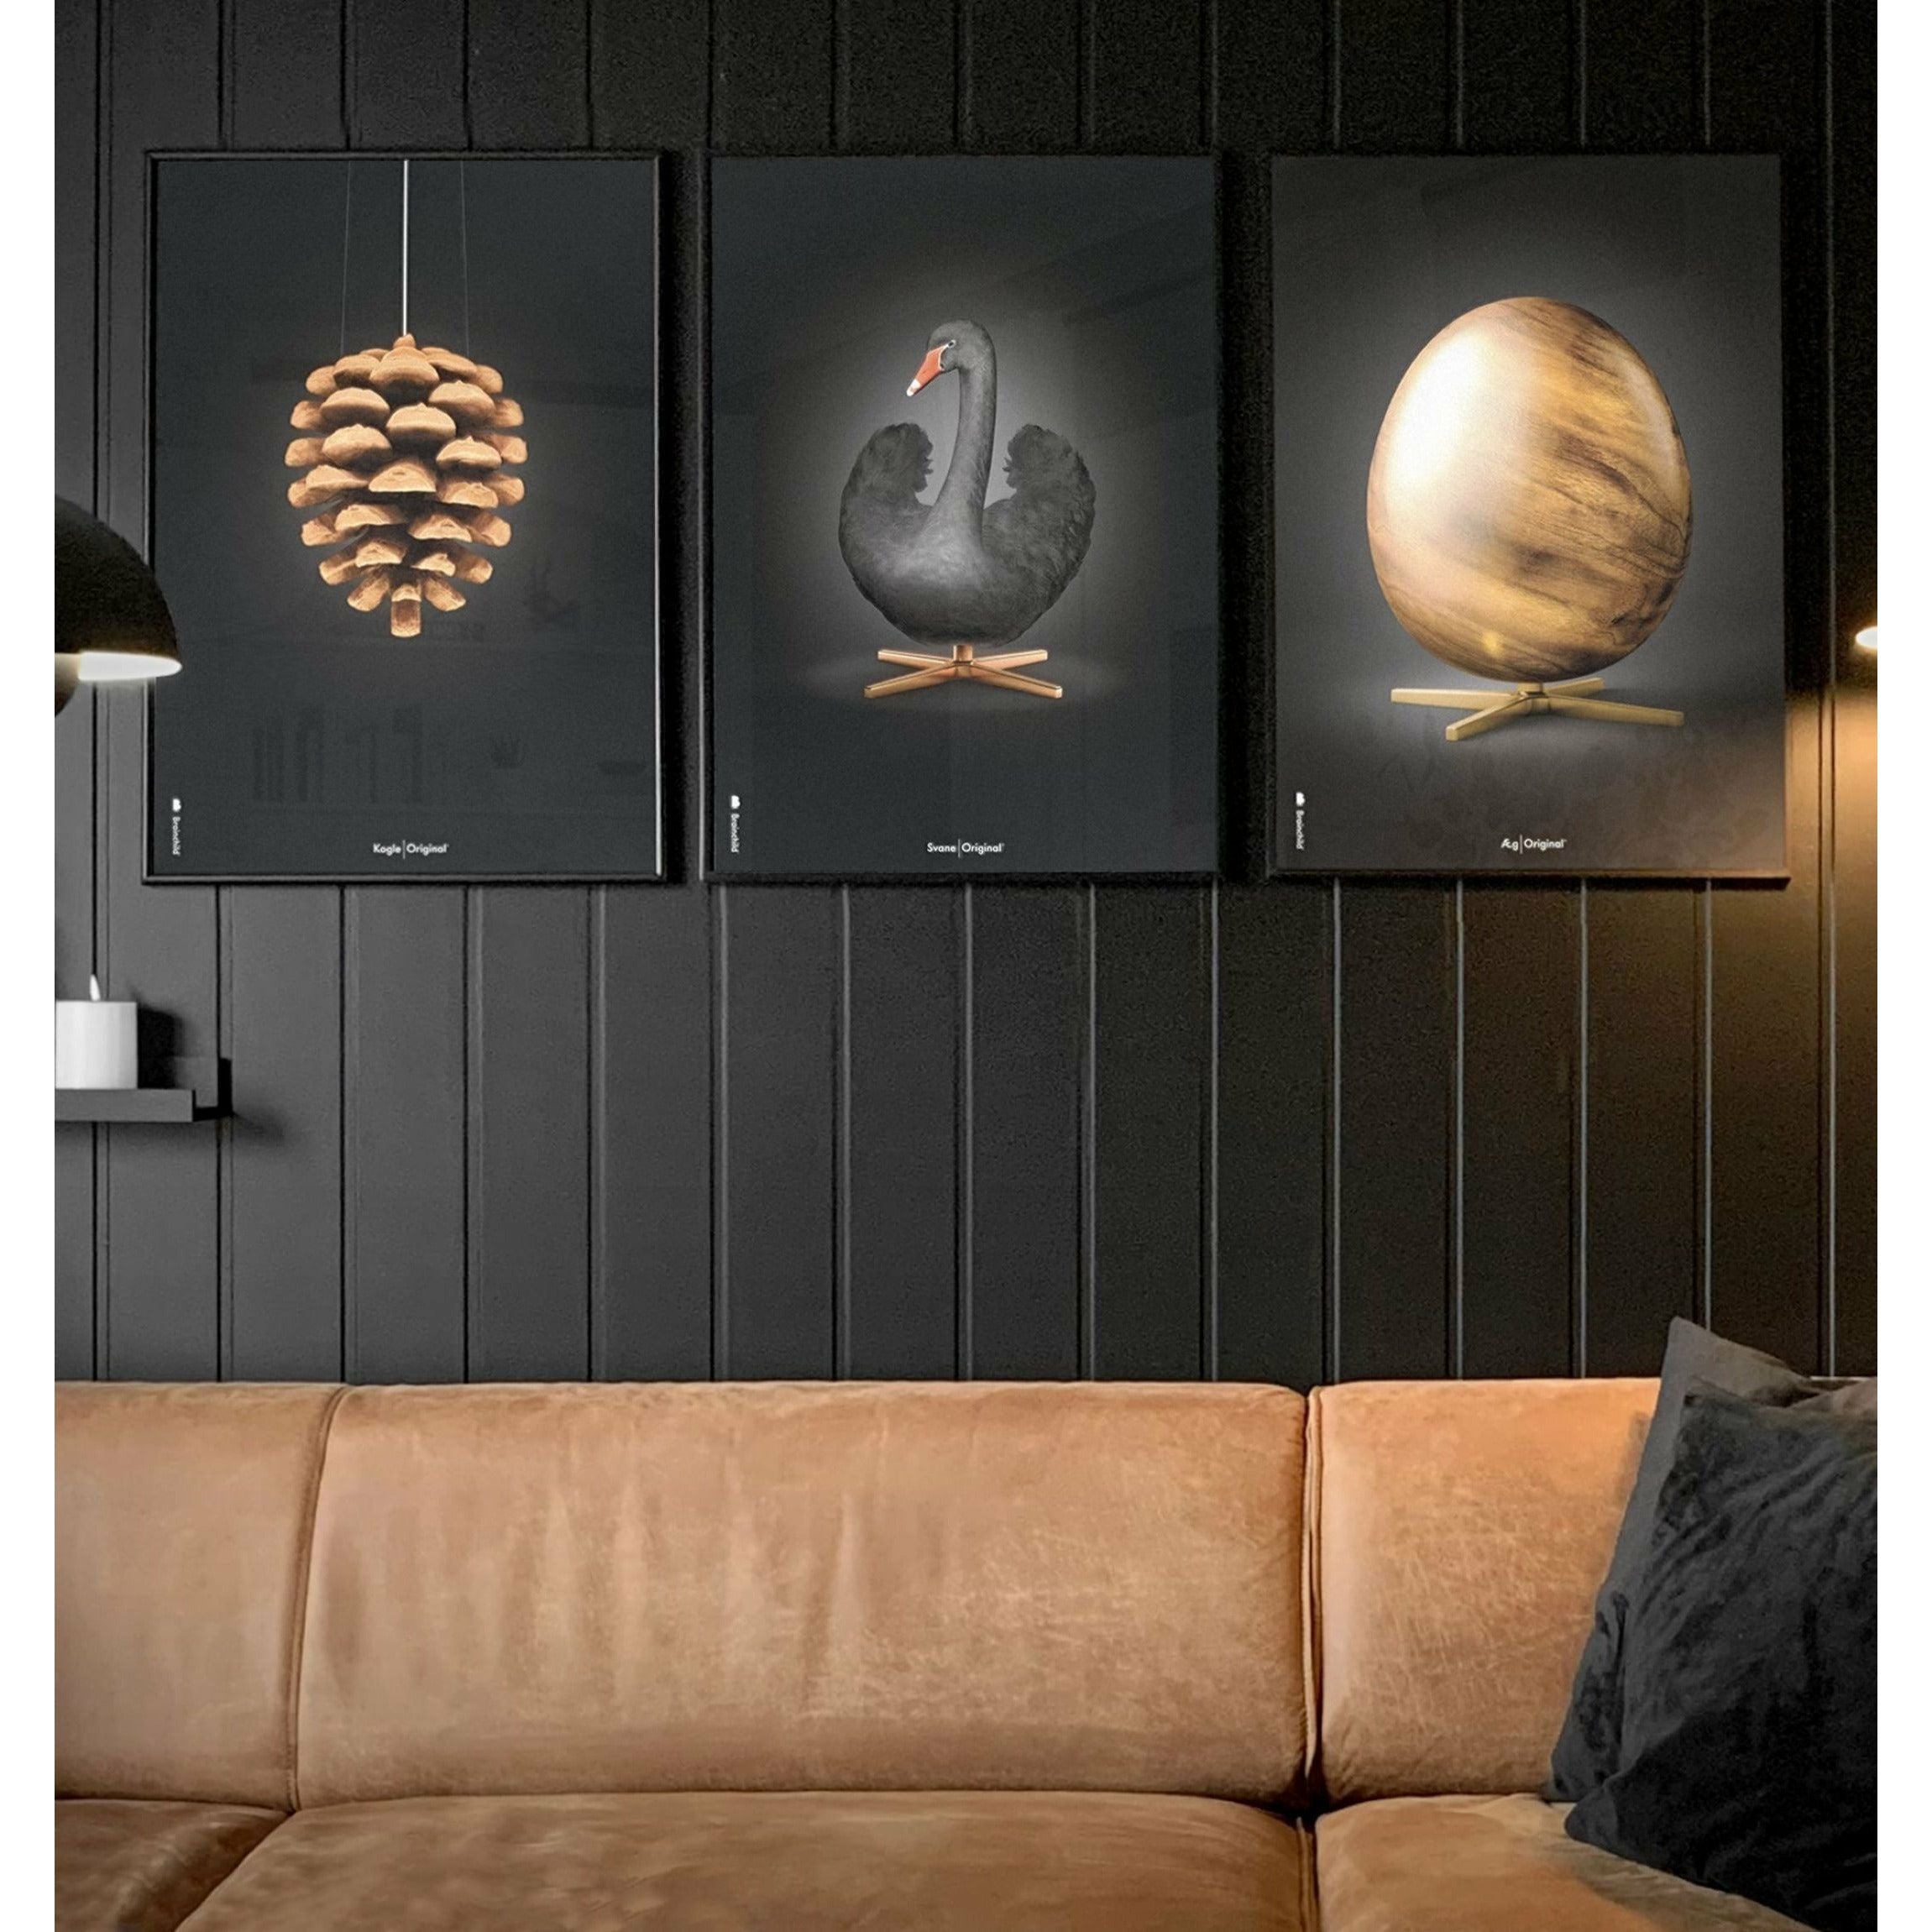 Brainchild Egg Figures Poster, Frame Made of Light Wood 70x100 cm, svart